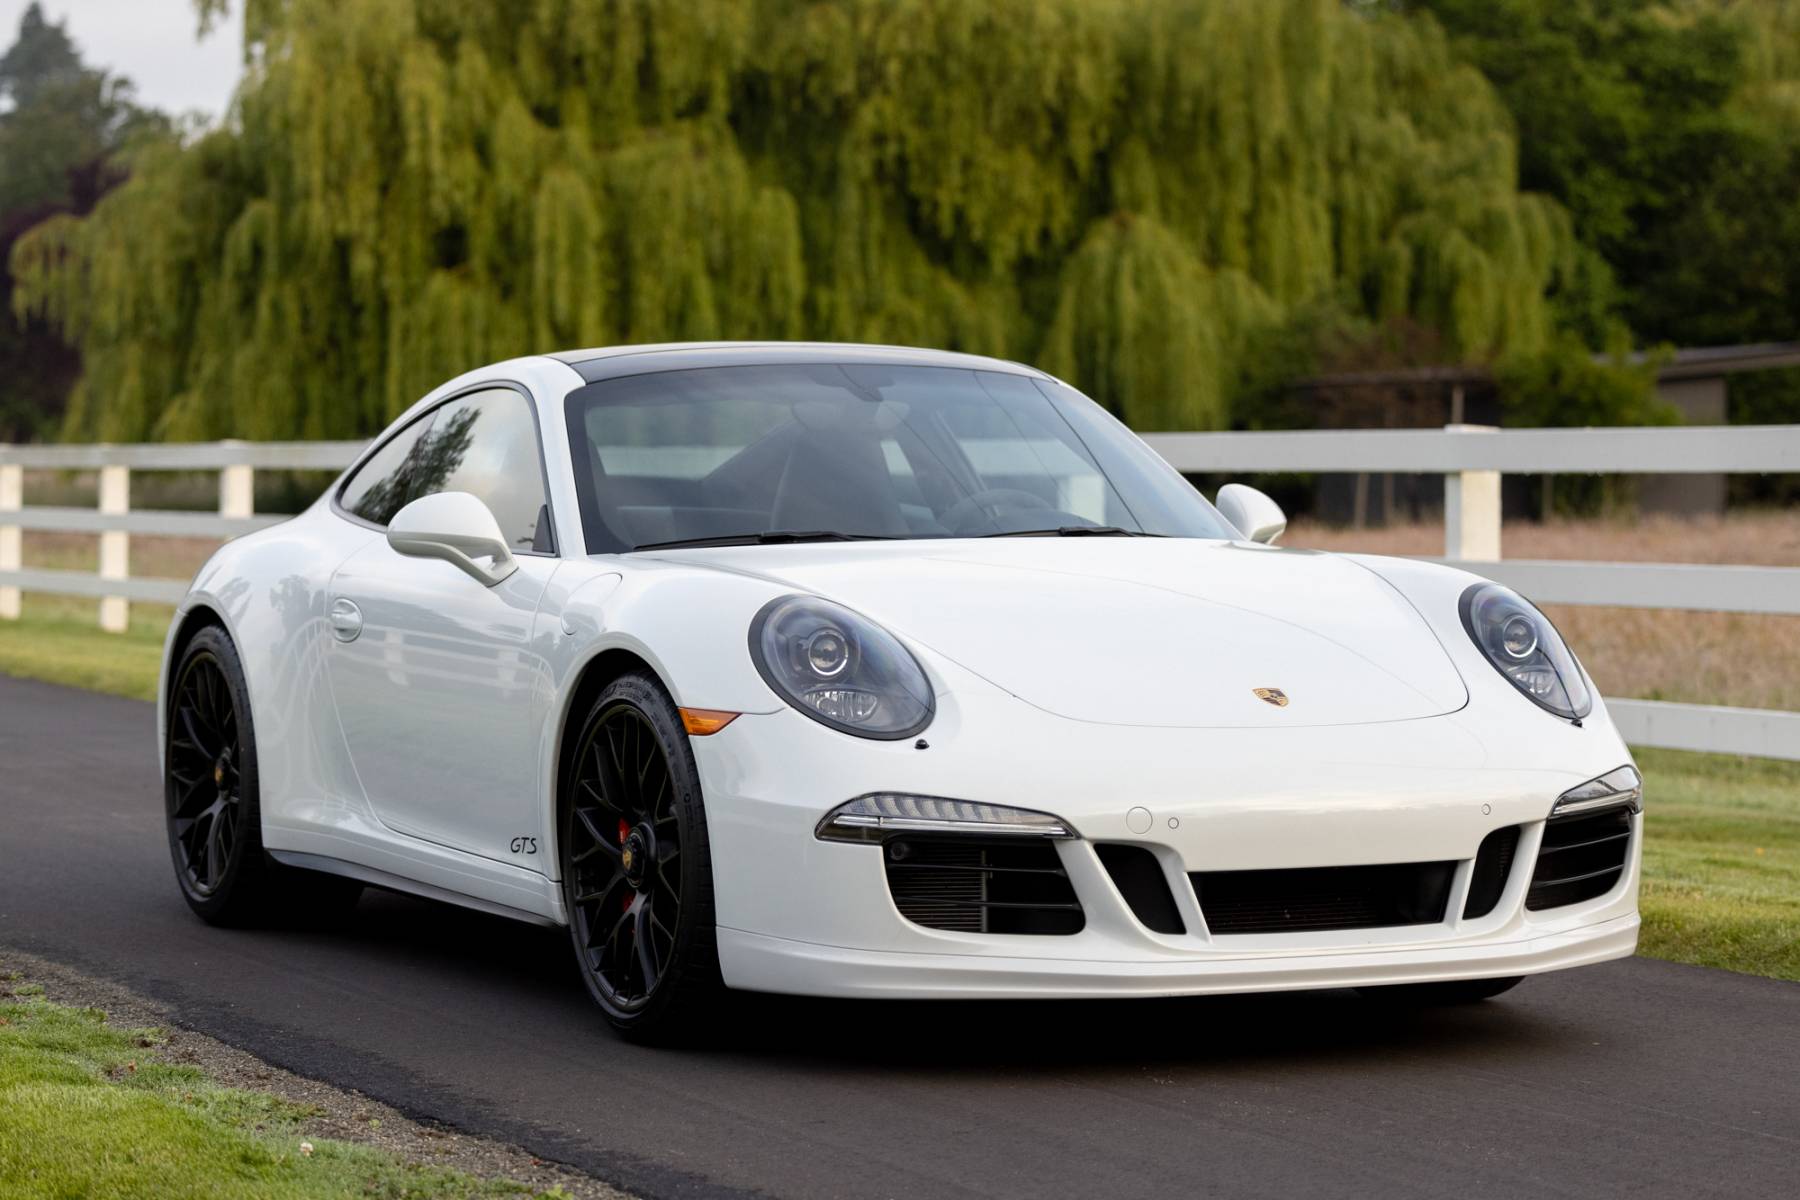 2015 Porsche 911 Carrera 4 GTS Manual - Silver Arrow Cars Ltd.